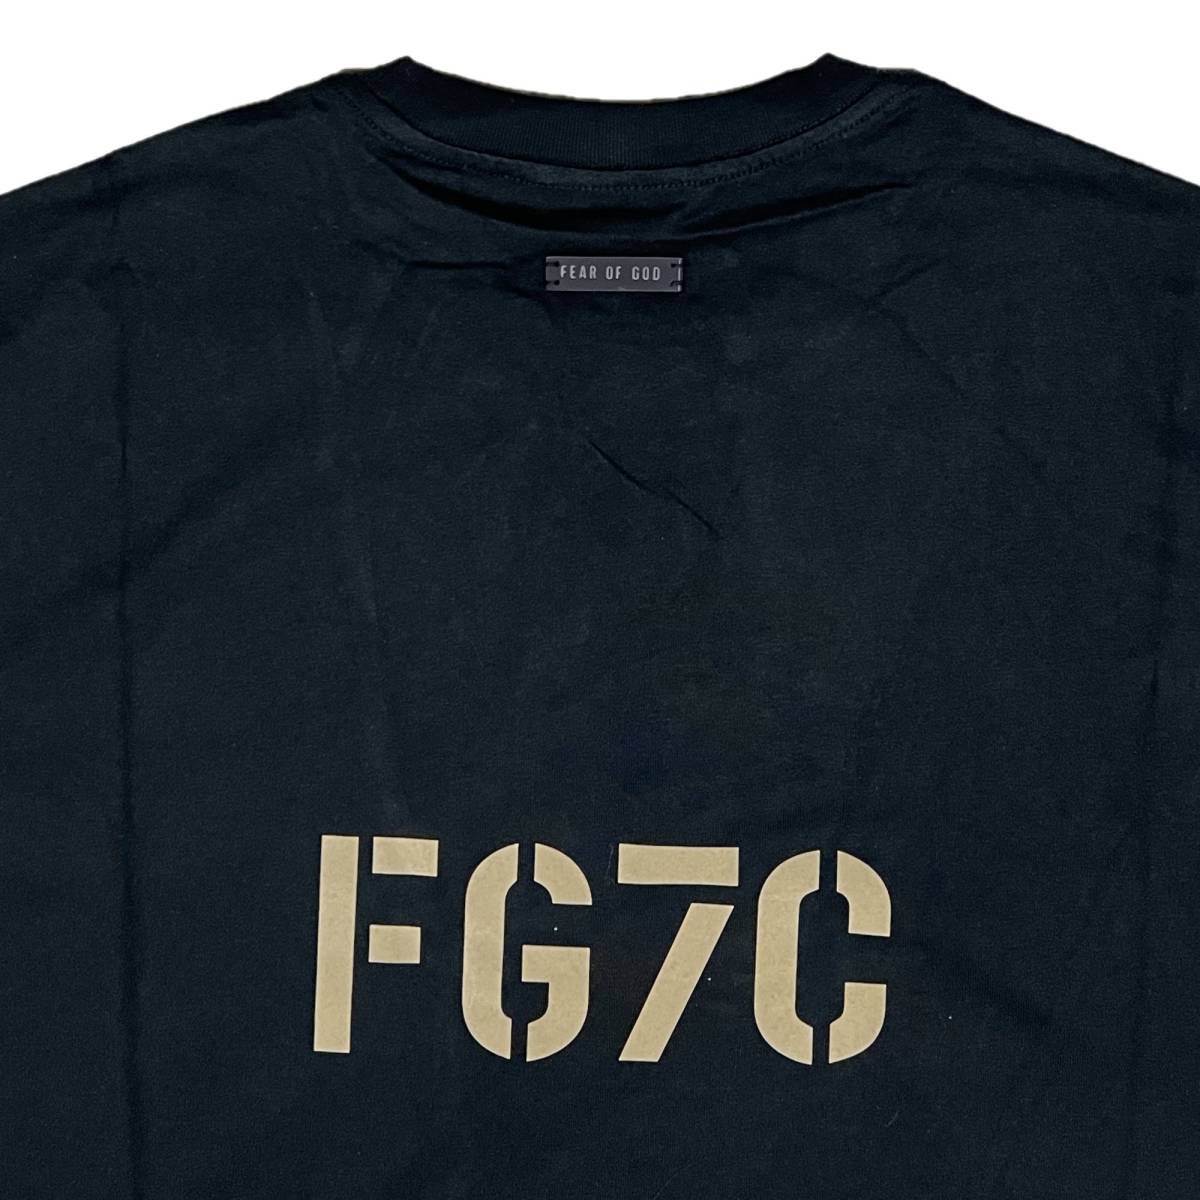 [並行輸入品] FEAR OF GOD FOG ESSETIALS エッセンシャルズ FG7Cロゴ 半袖 Tシャツ (ブラック) (XL)_画像4